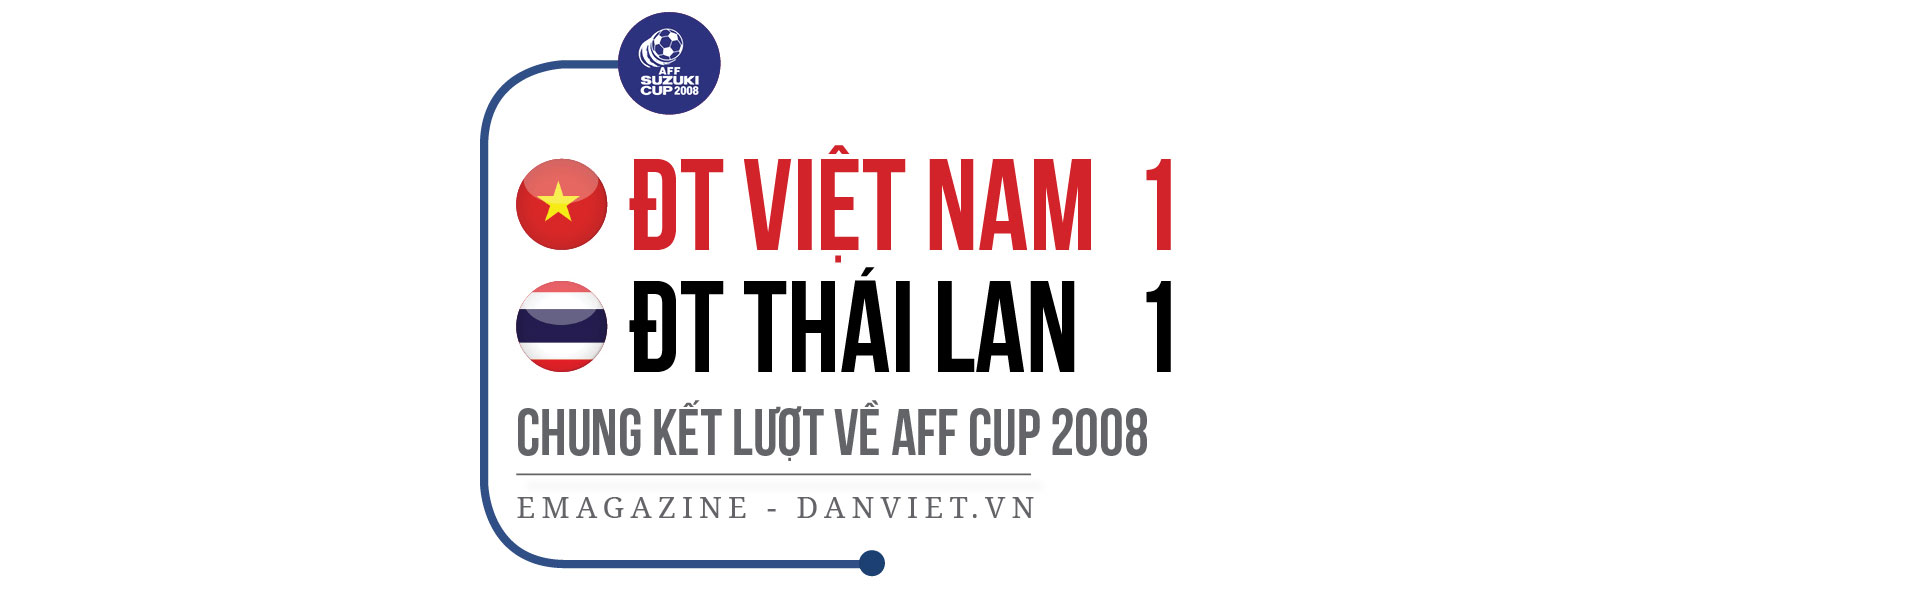 3 khoảnh khắc vàng của ĐT Việt Nam trong lịch sử AFF Cup - Ảnh 3.